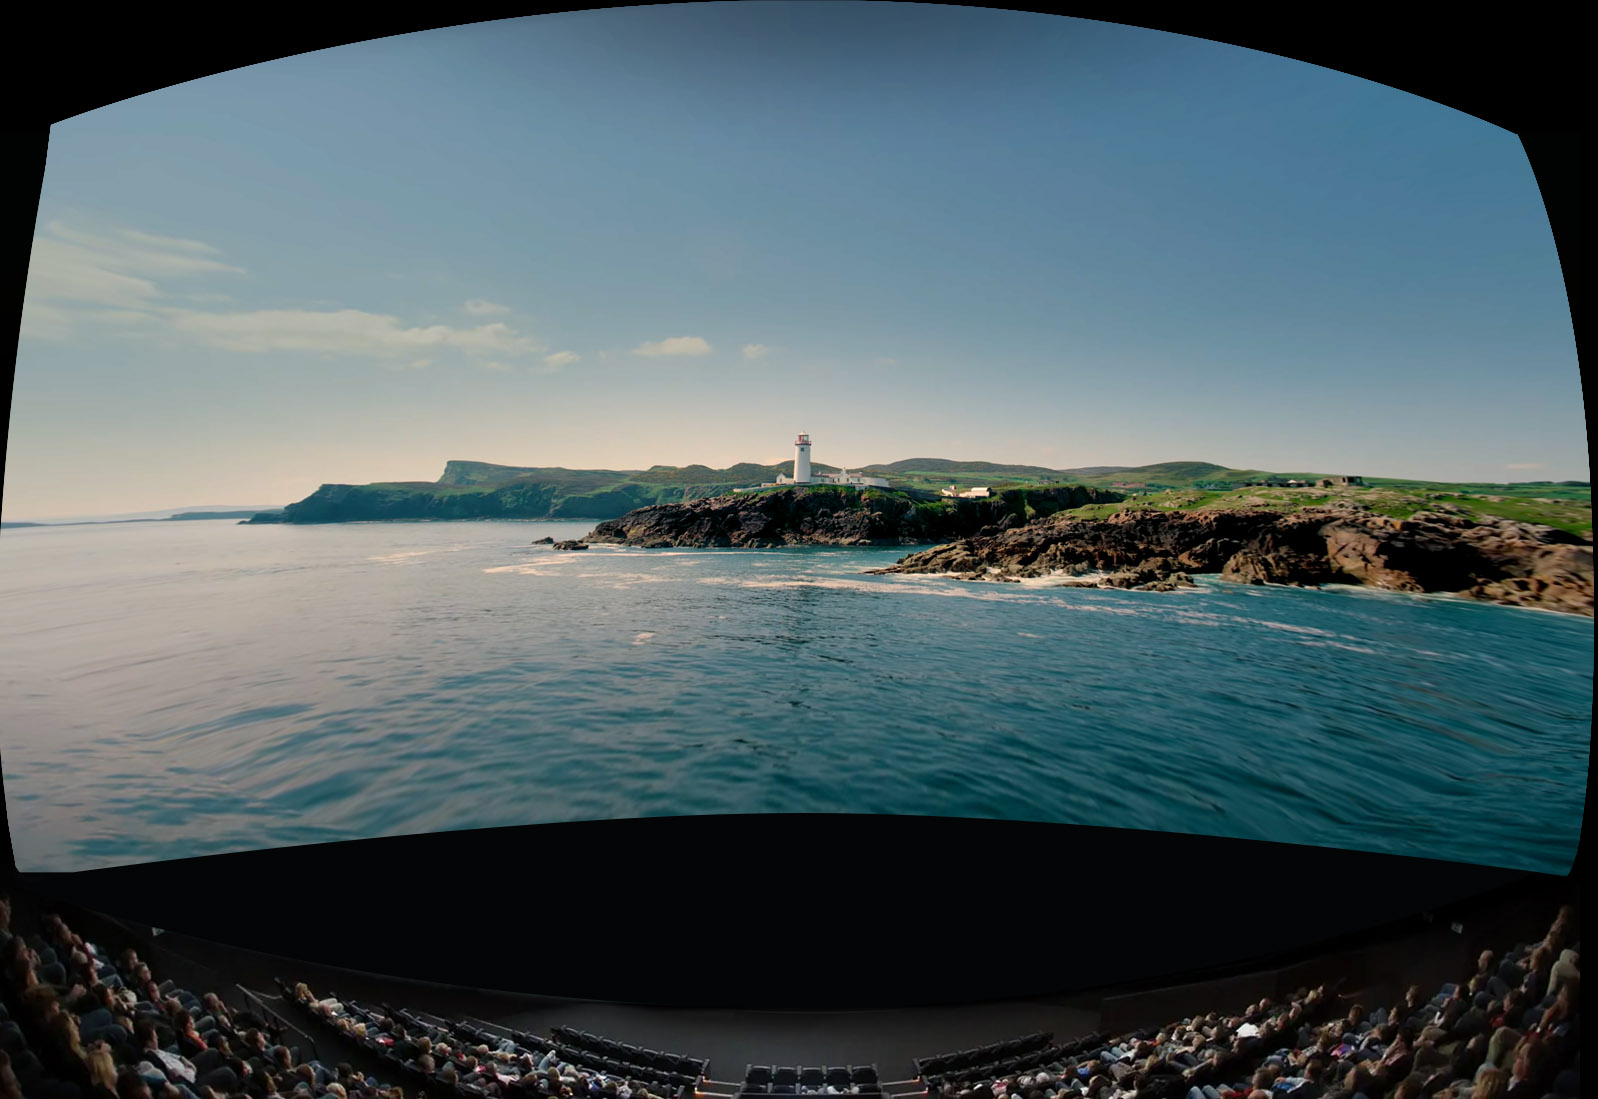 IMAX dome theatre screen size